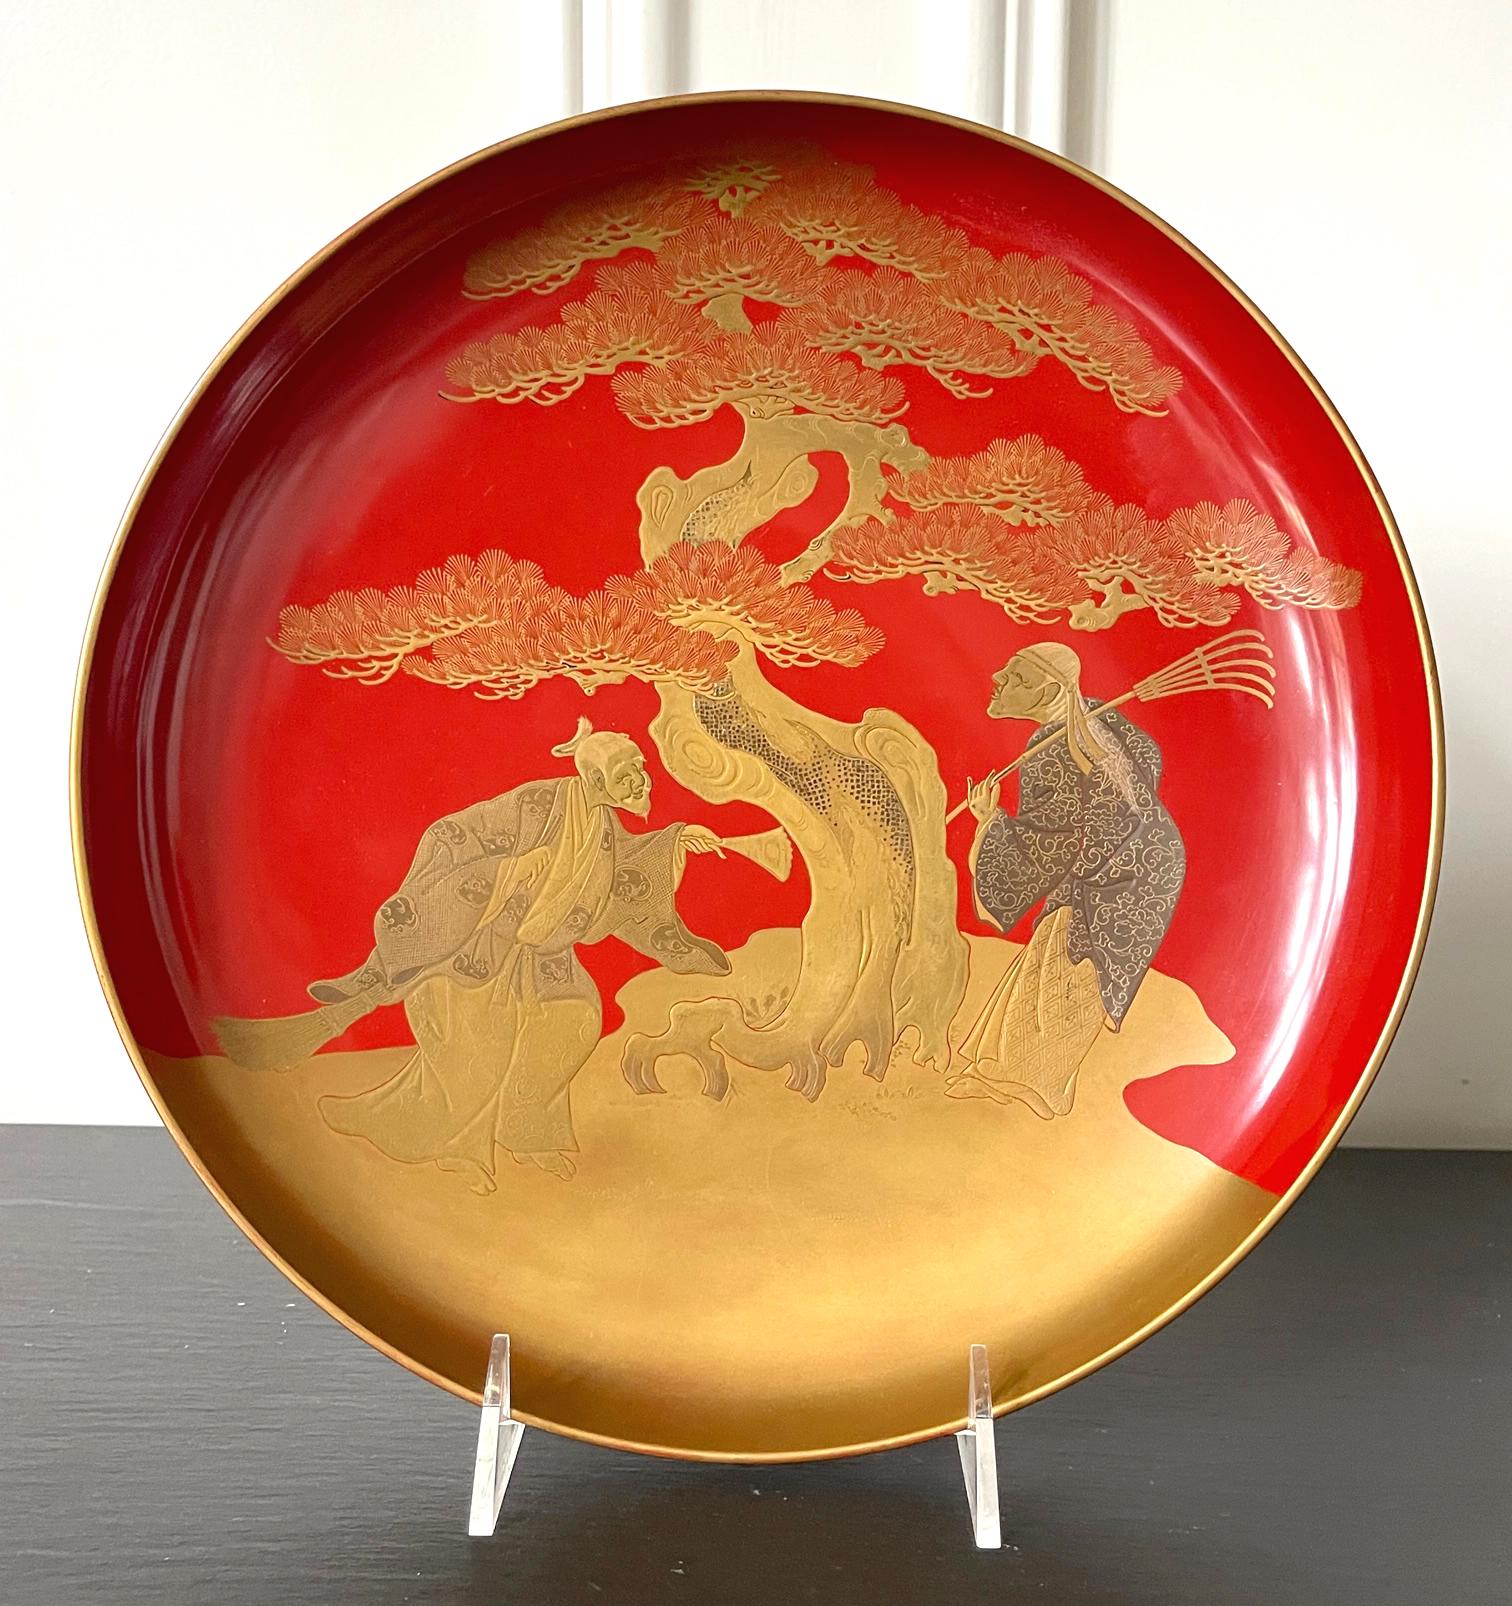 Une grande assiette circulaire avec une base à tige courte en laque vermillon de la fin de la période Meiji vers la fin du XIXe siècle ou le début du XXe siècle. La surface était décorée d'une très belle image maki-e représentant l'histoire de